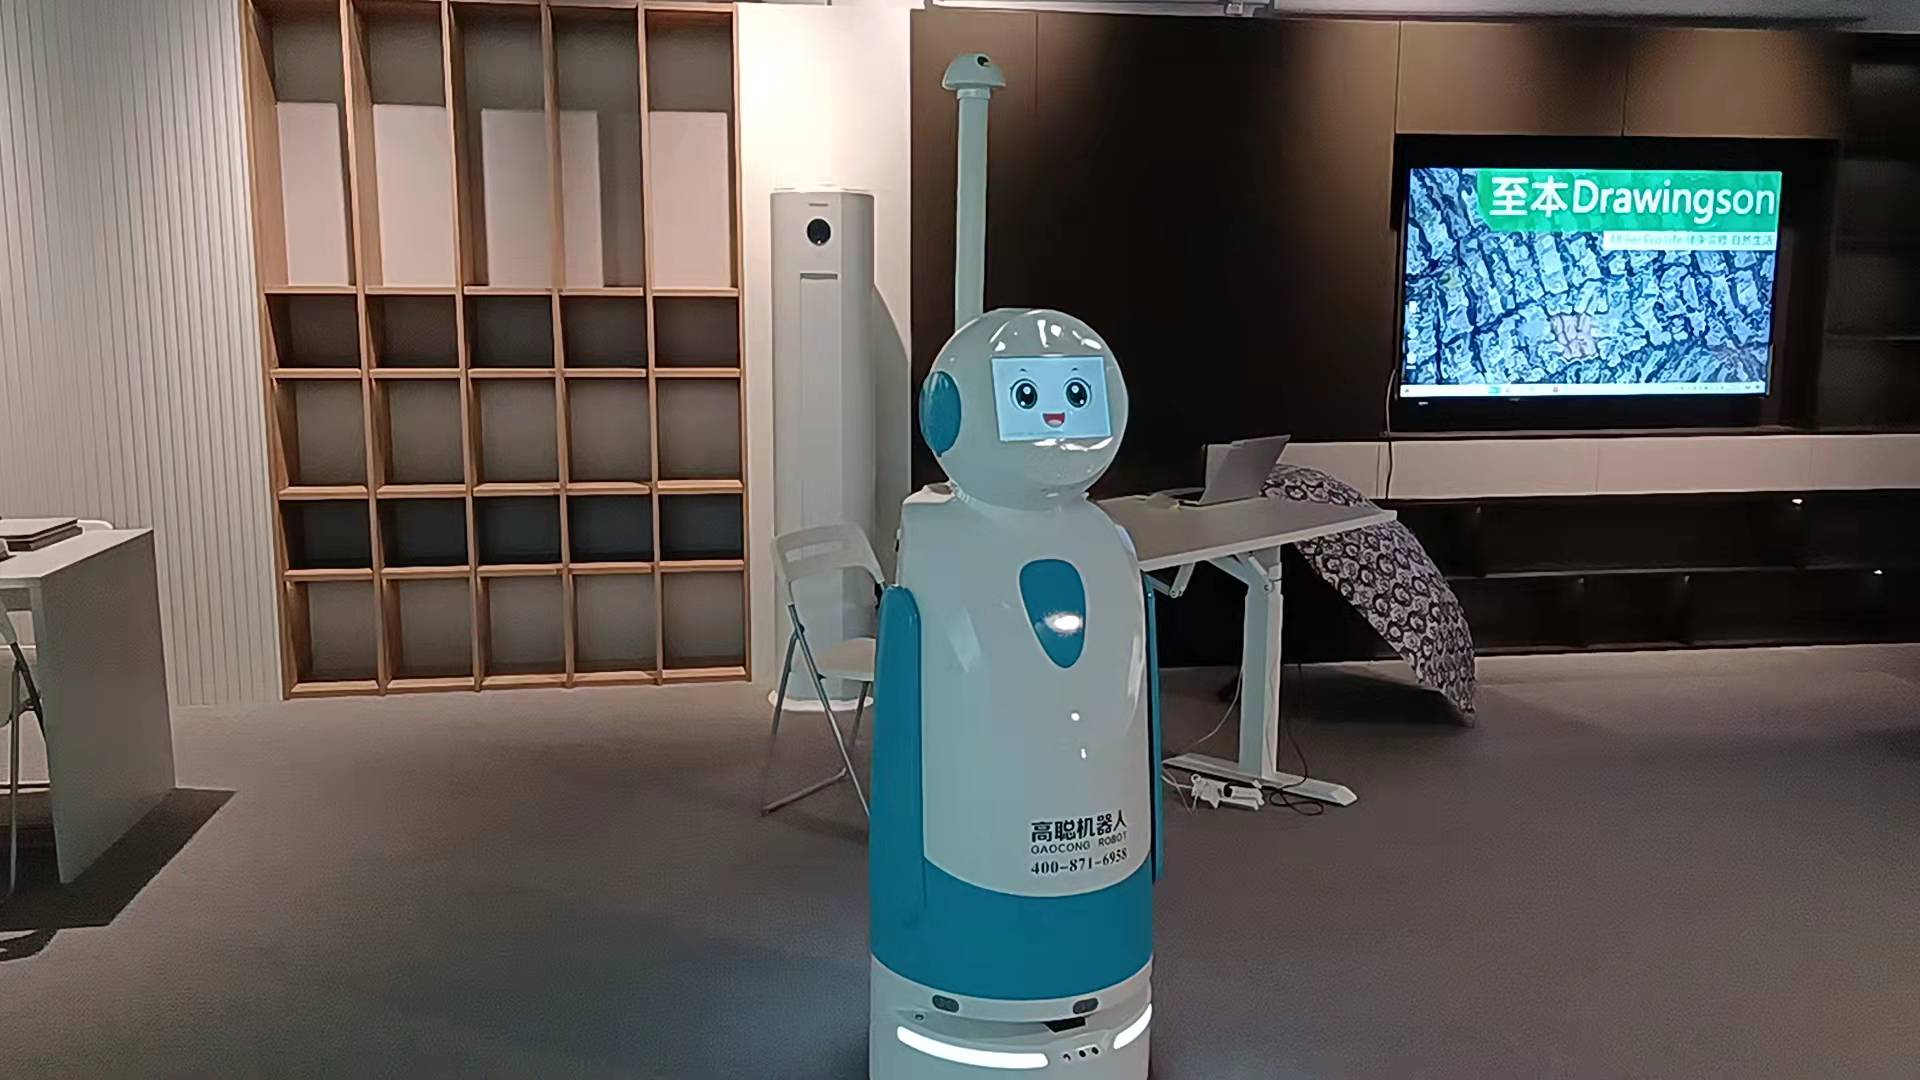 高聪机器人加入至本健康人居展厅大家庭(图3)